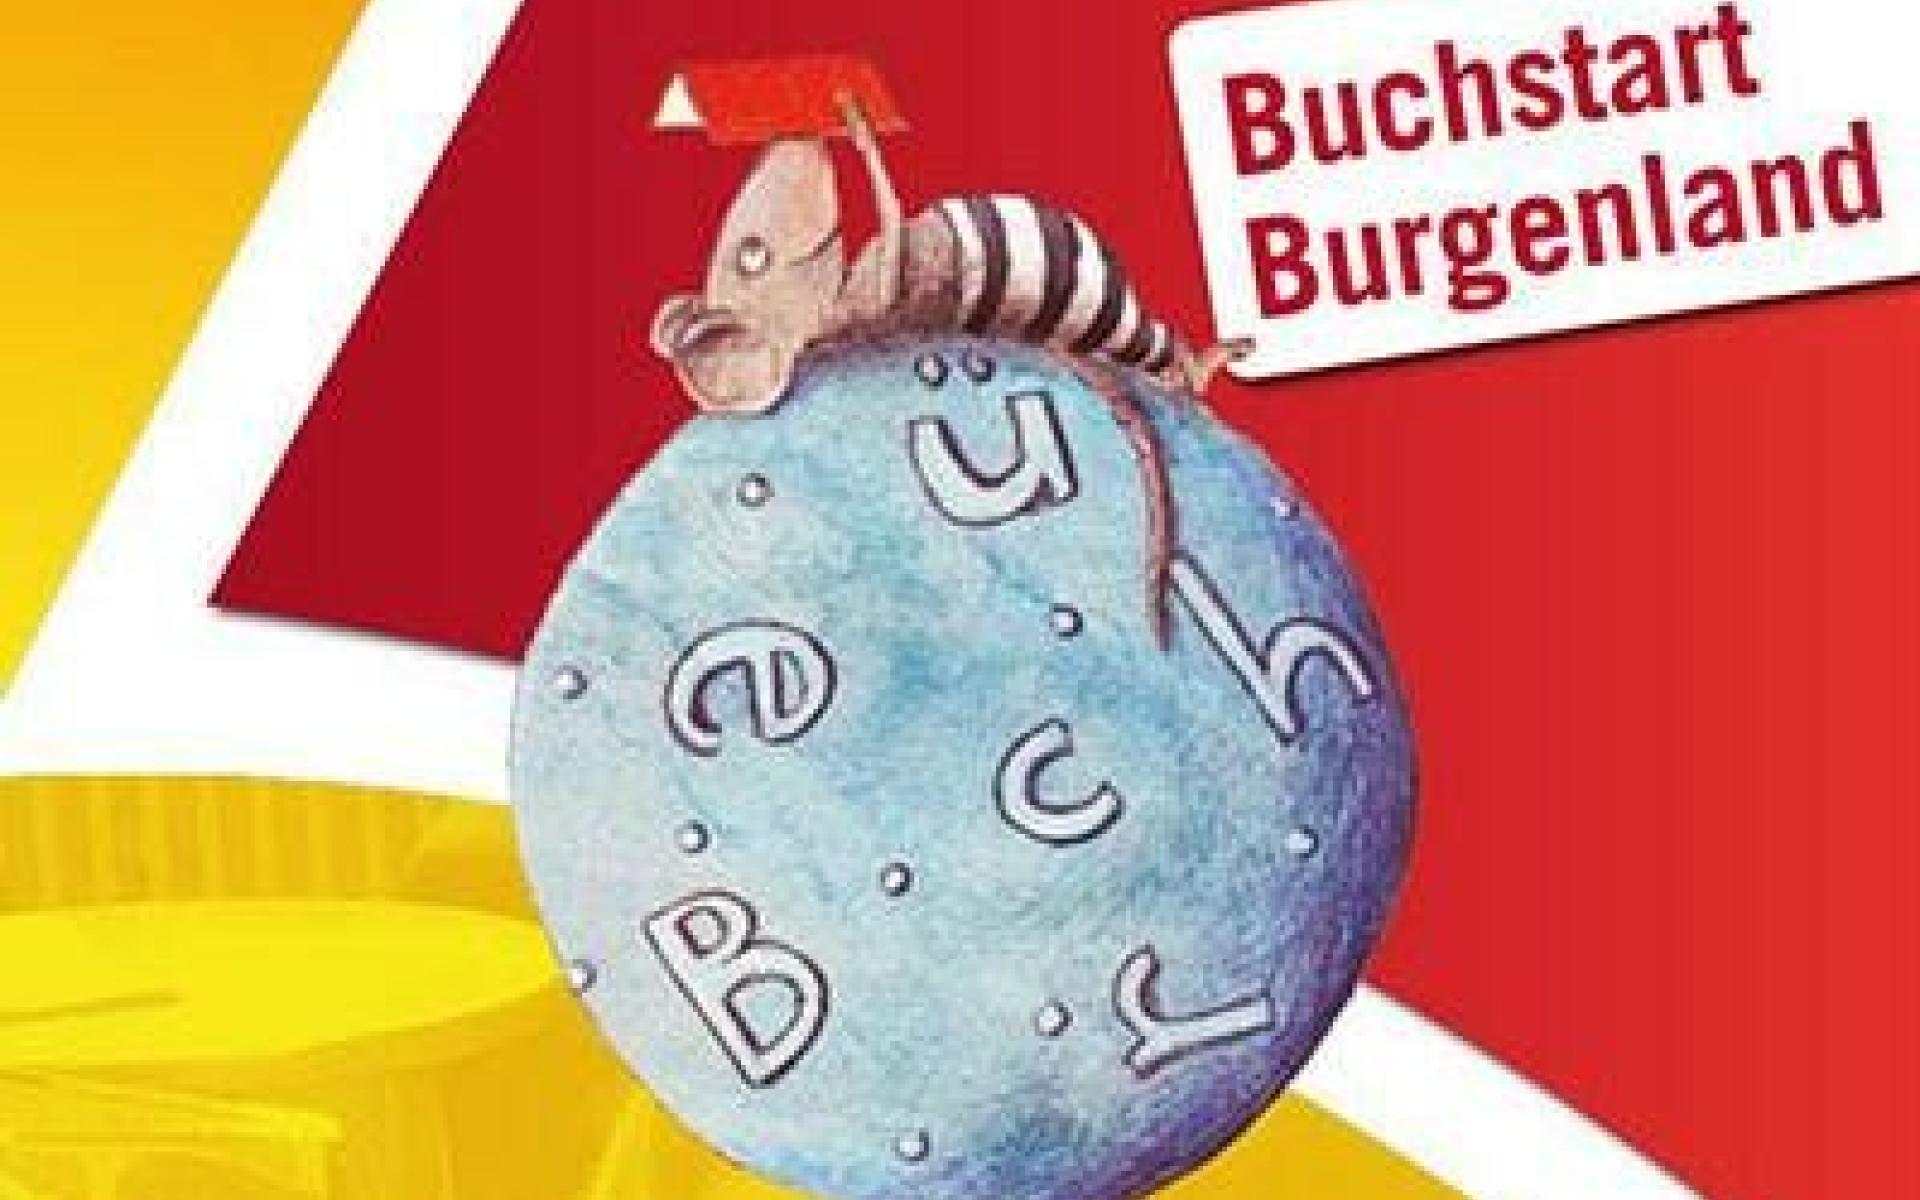 Buchstart Burgenland Logo